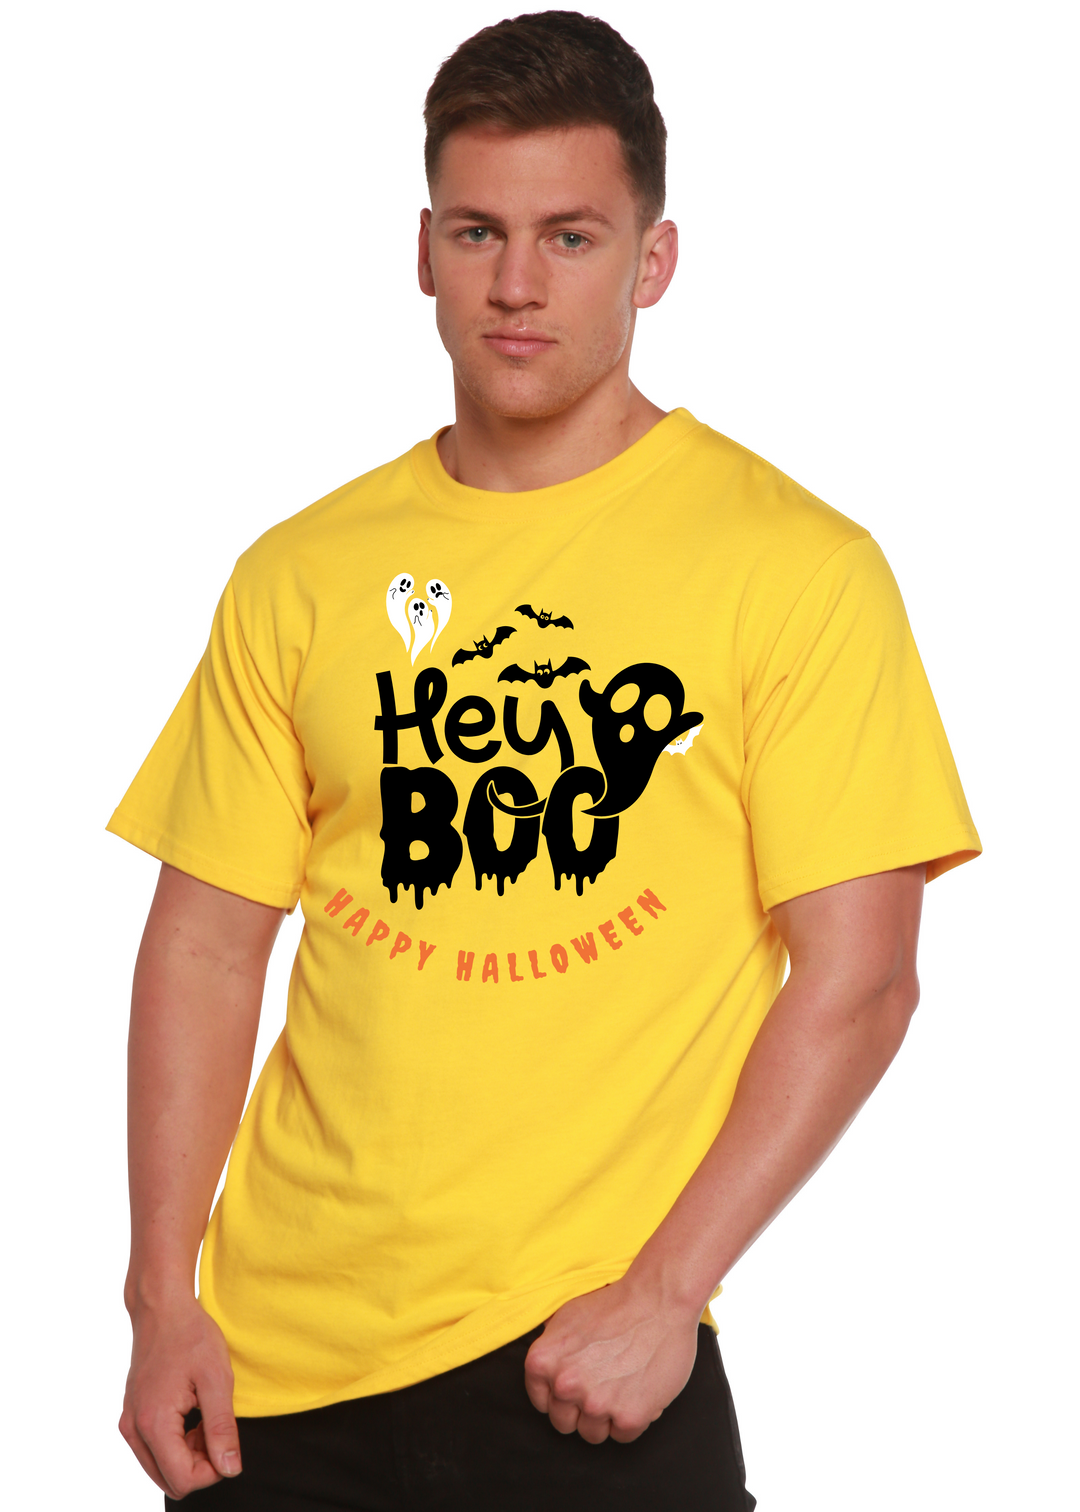 Hey Boo Graphic Bamboo T-Shirt lemon chrome